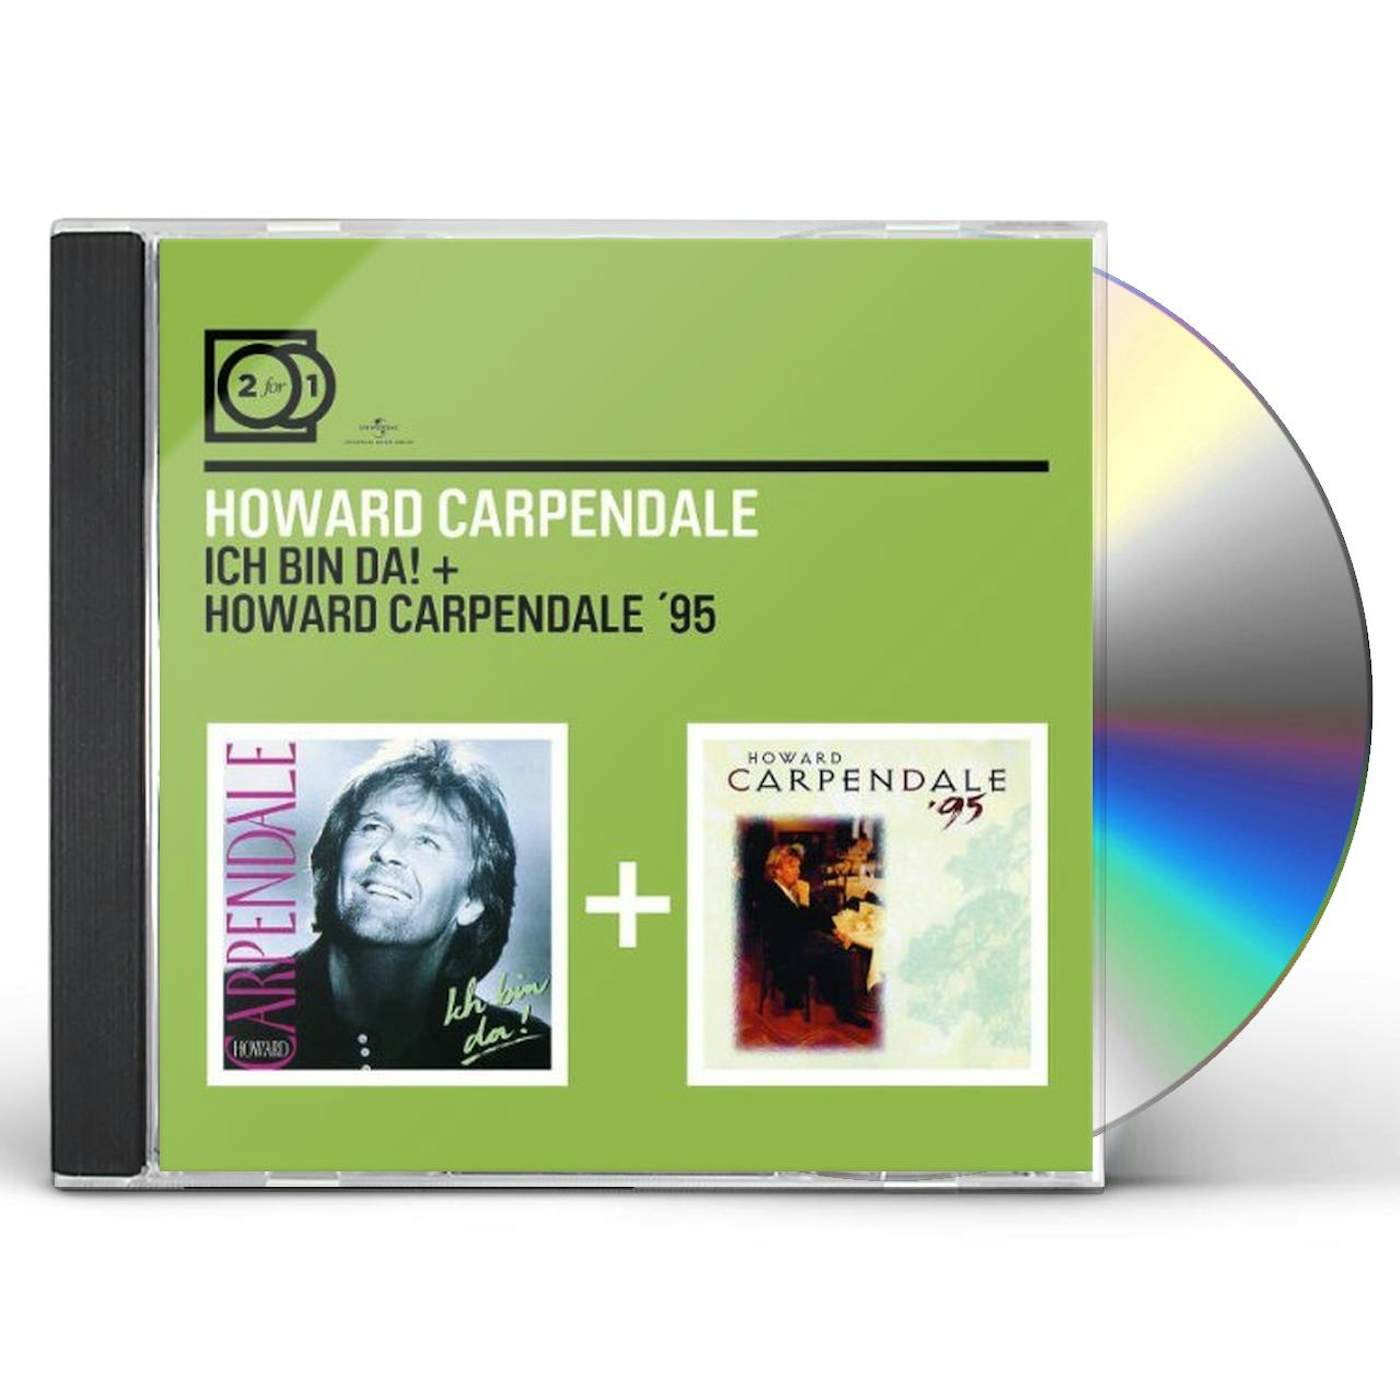 ICH BIN DA / HOWARD CARPENDALE 95 CD